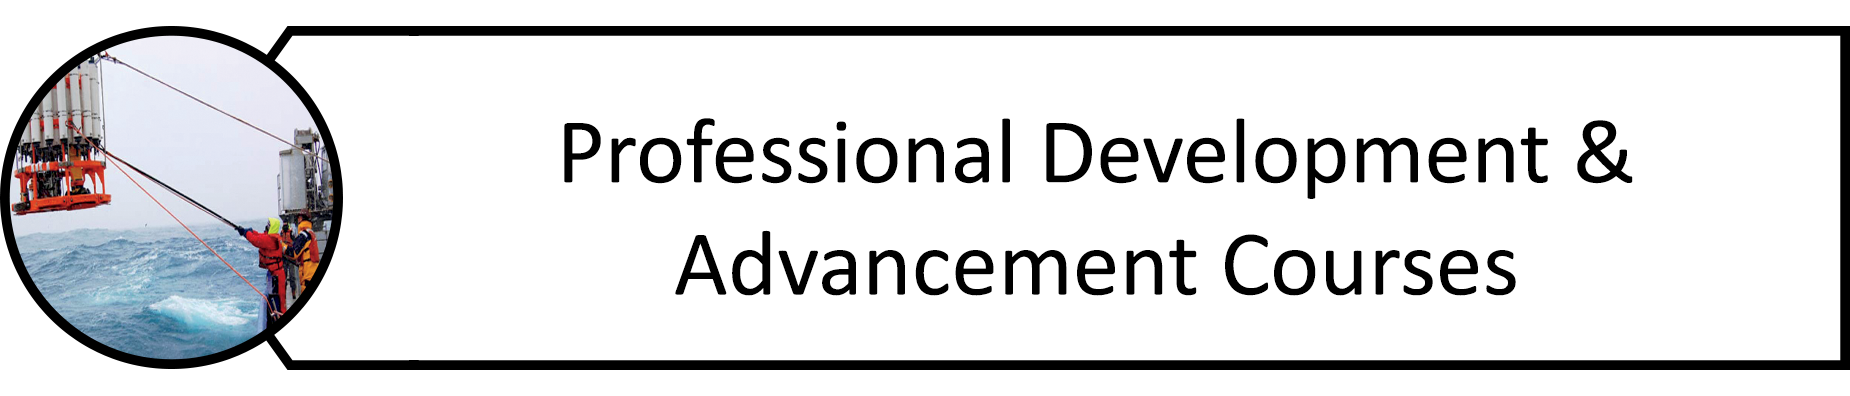 Professional Development & Advancement Courses